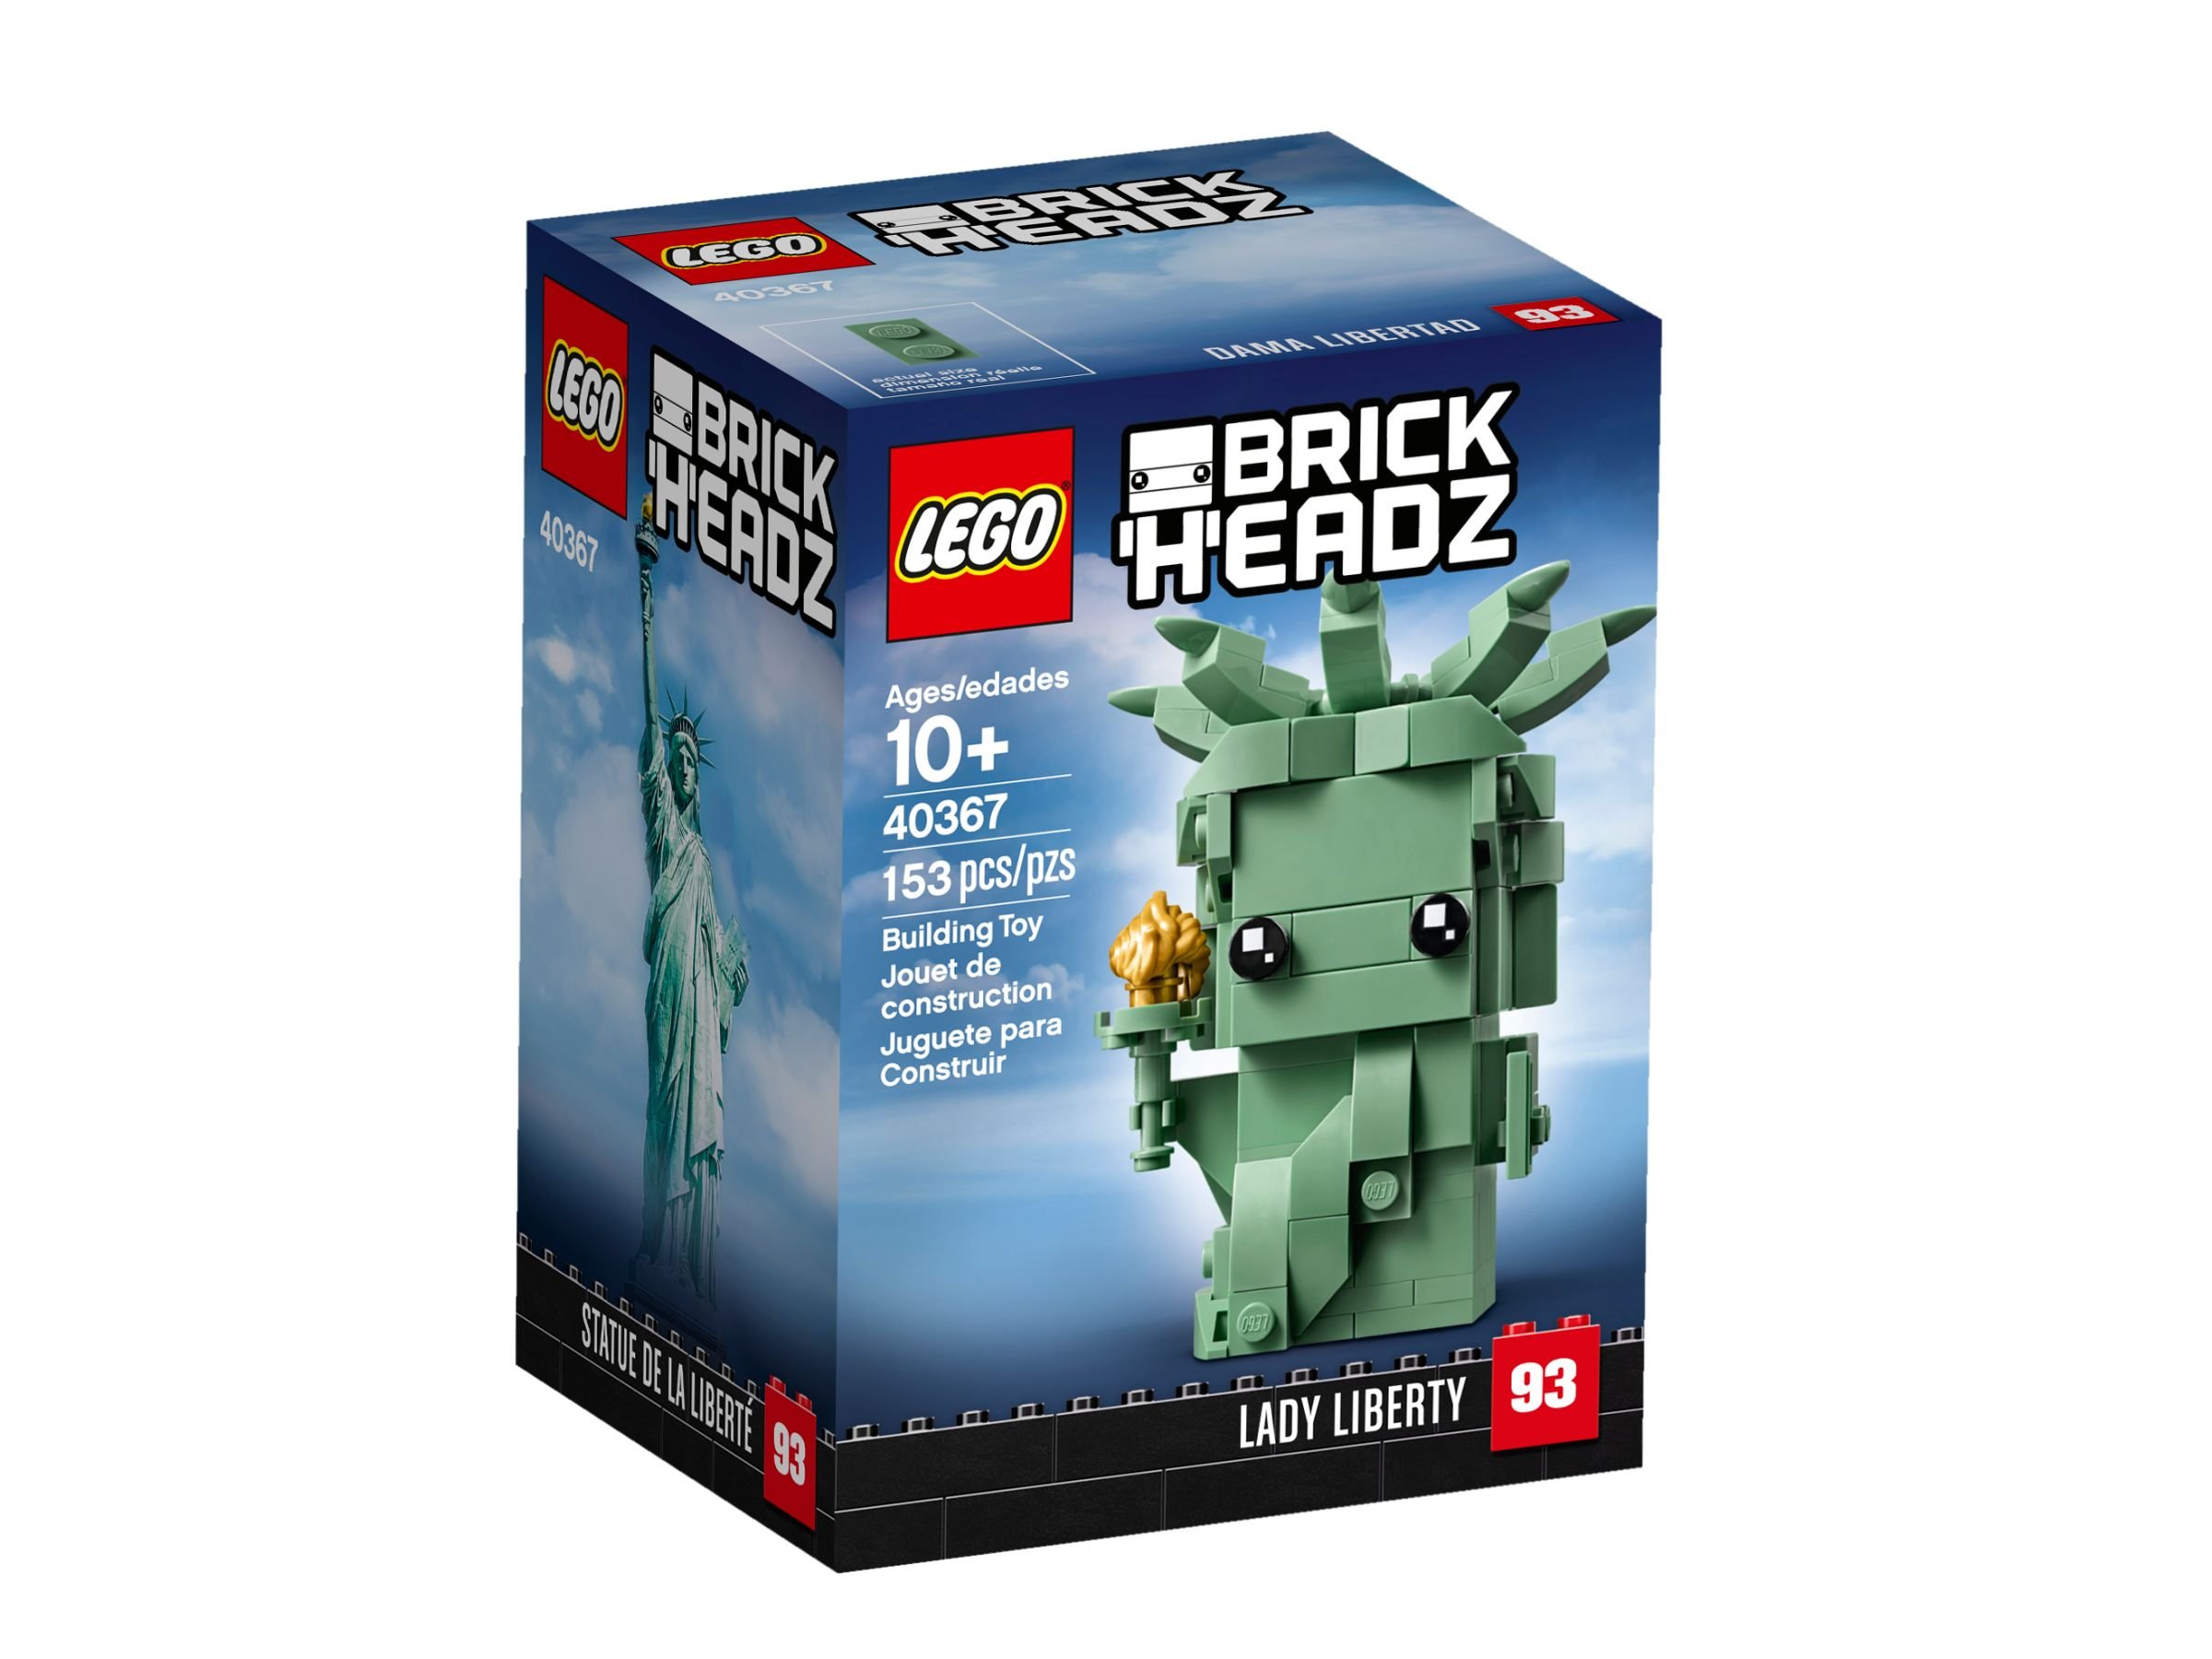 LEGO BrickHeadz 40367 Freiheitsstatue LEGO_40367_alt1.jpg